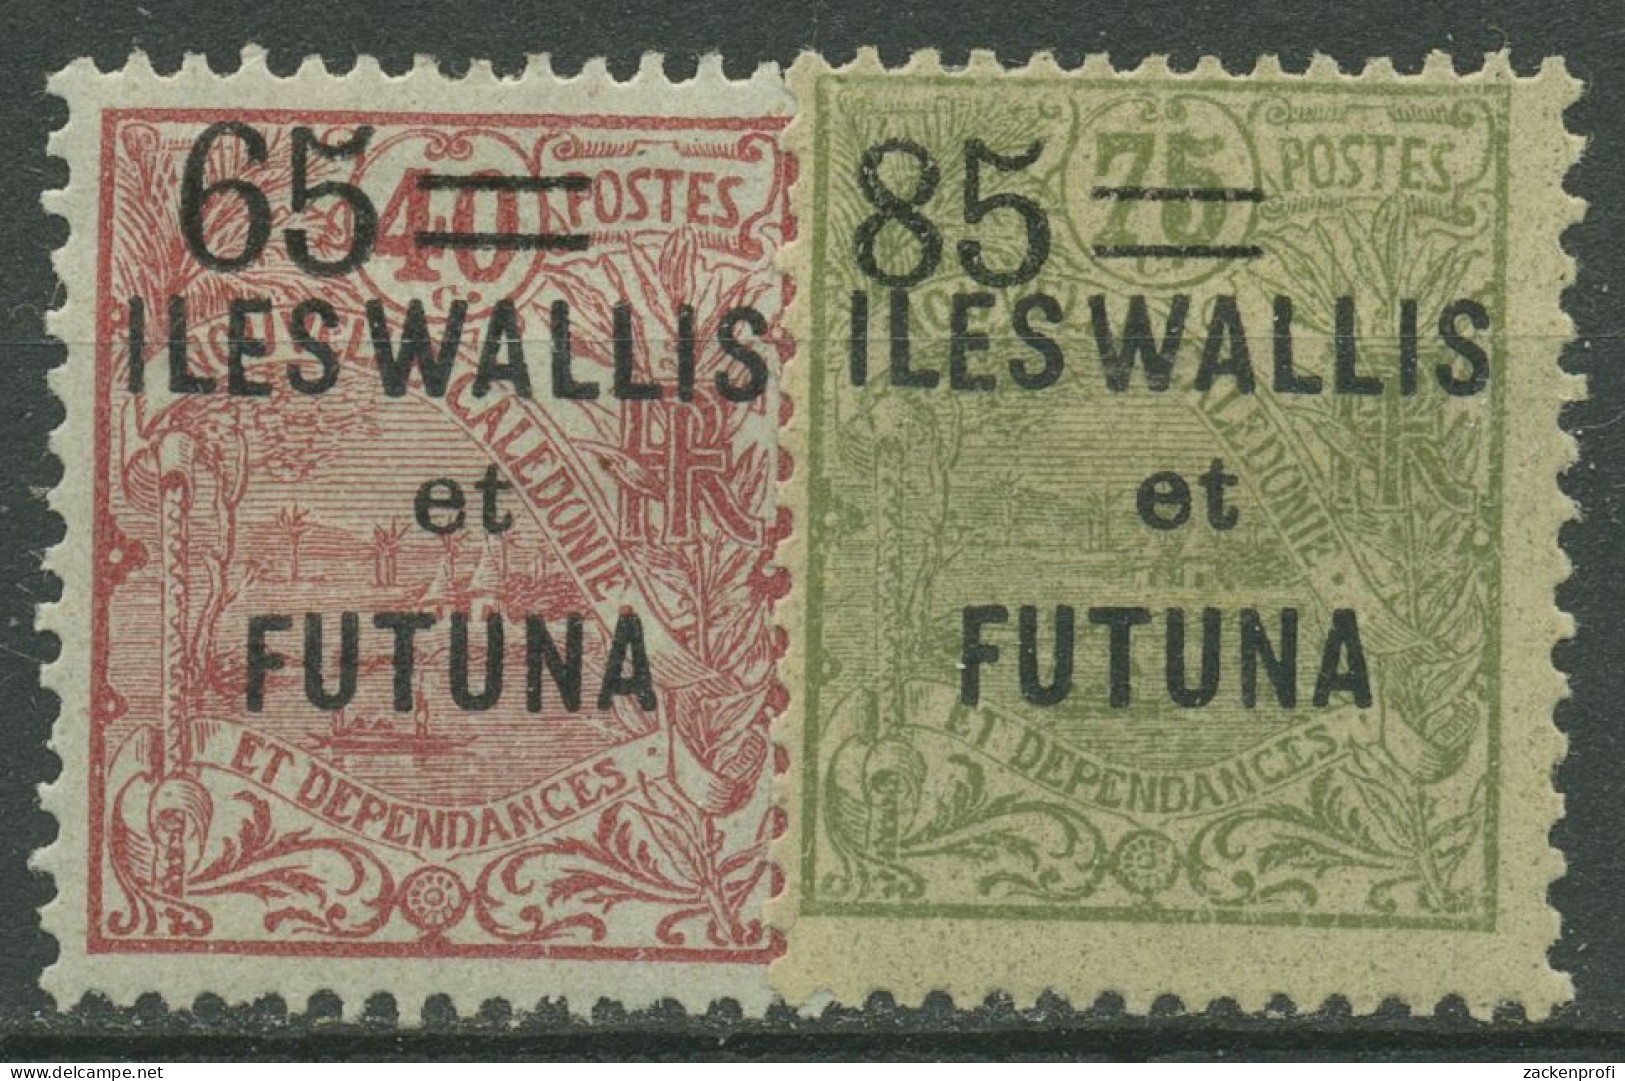 Wallis Und Futuna 1925 Marken Neukaled. Mit Aufdruck 41/42 Mit Falz, Haftstellen - Nuovi